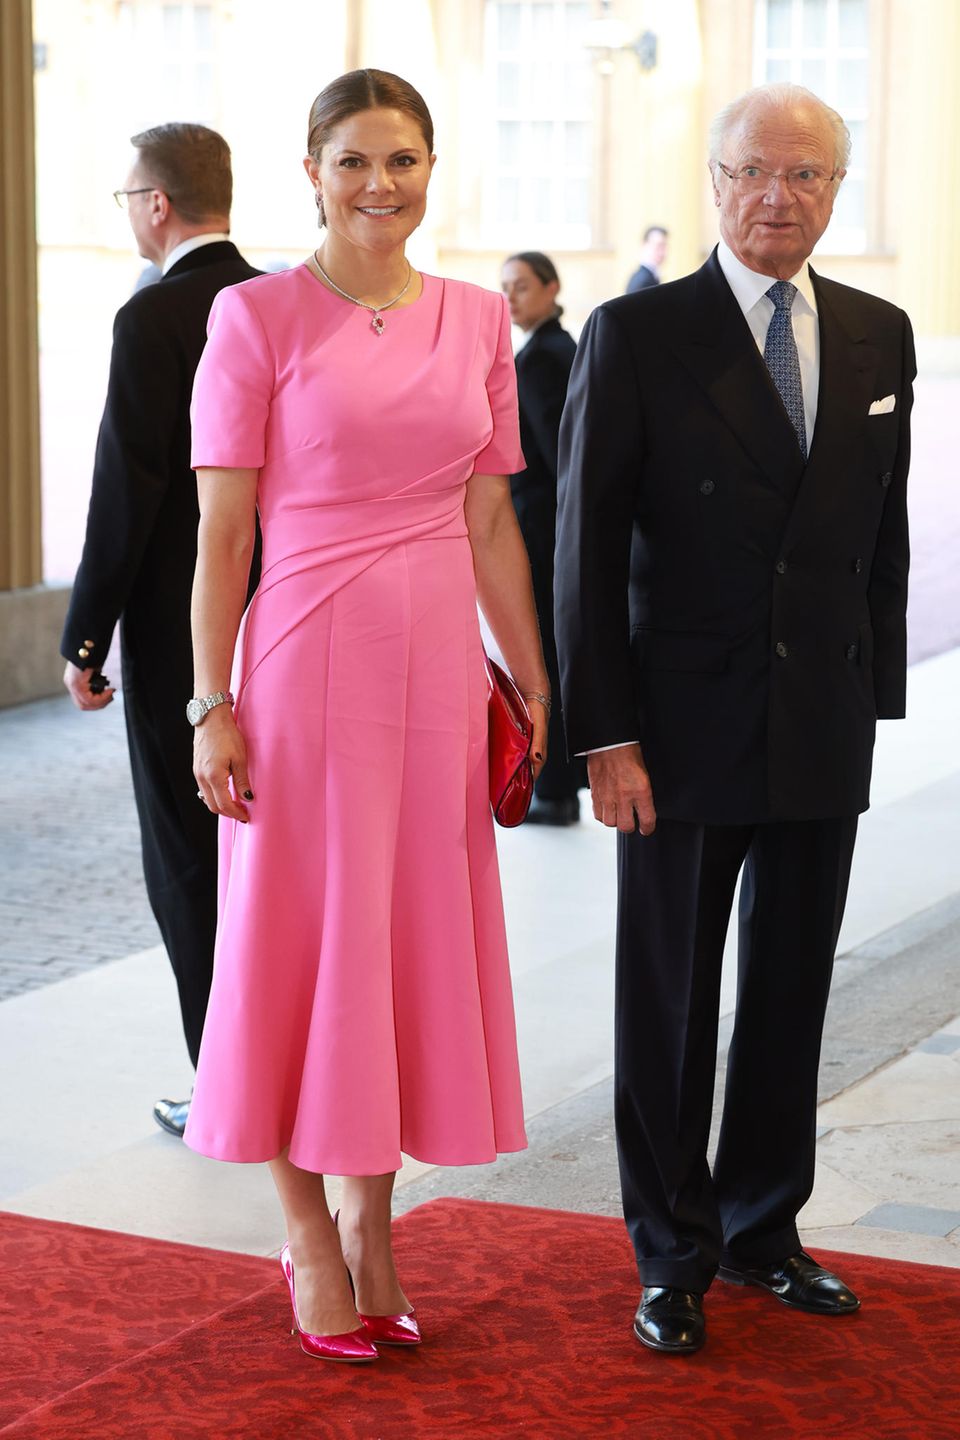 Kurz nach den norwegischen Royals, treffen die schwedischen Kolleg:innen ein: Prinzessin Victoria strahlt in einer rosafarbenen Robe, während Papa König Carl Gustaf sein gewohnt charmant-grimmiges Lächeln aufsetzt.